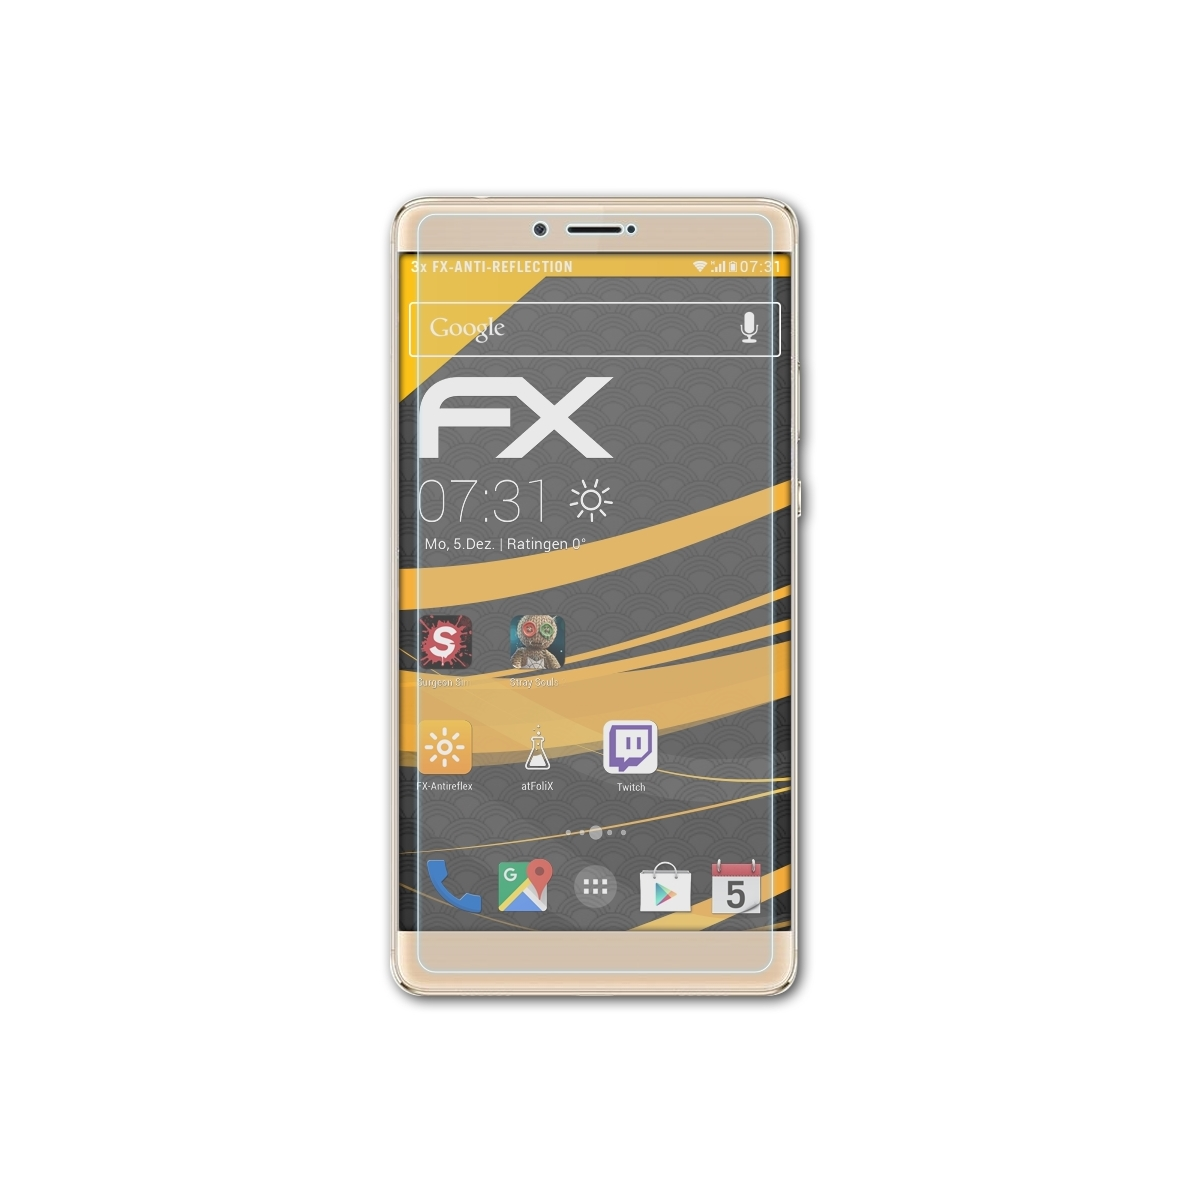 Displayschutz(für FX-Antireflex 3x Huawei 8) Honor Note ATFOLIX